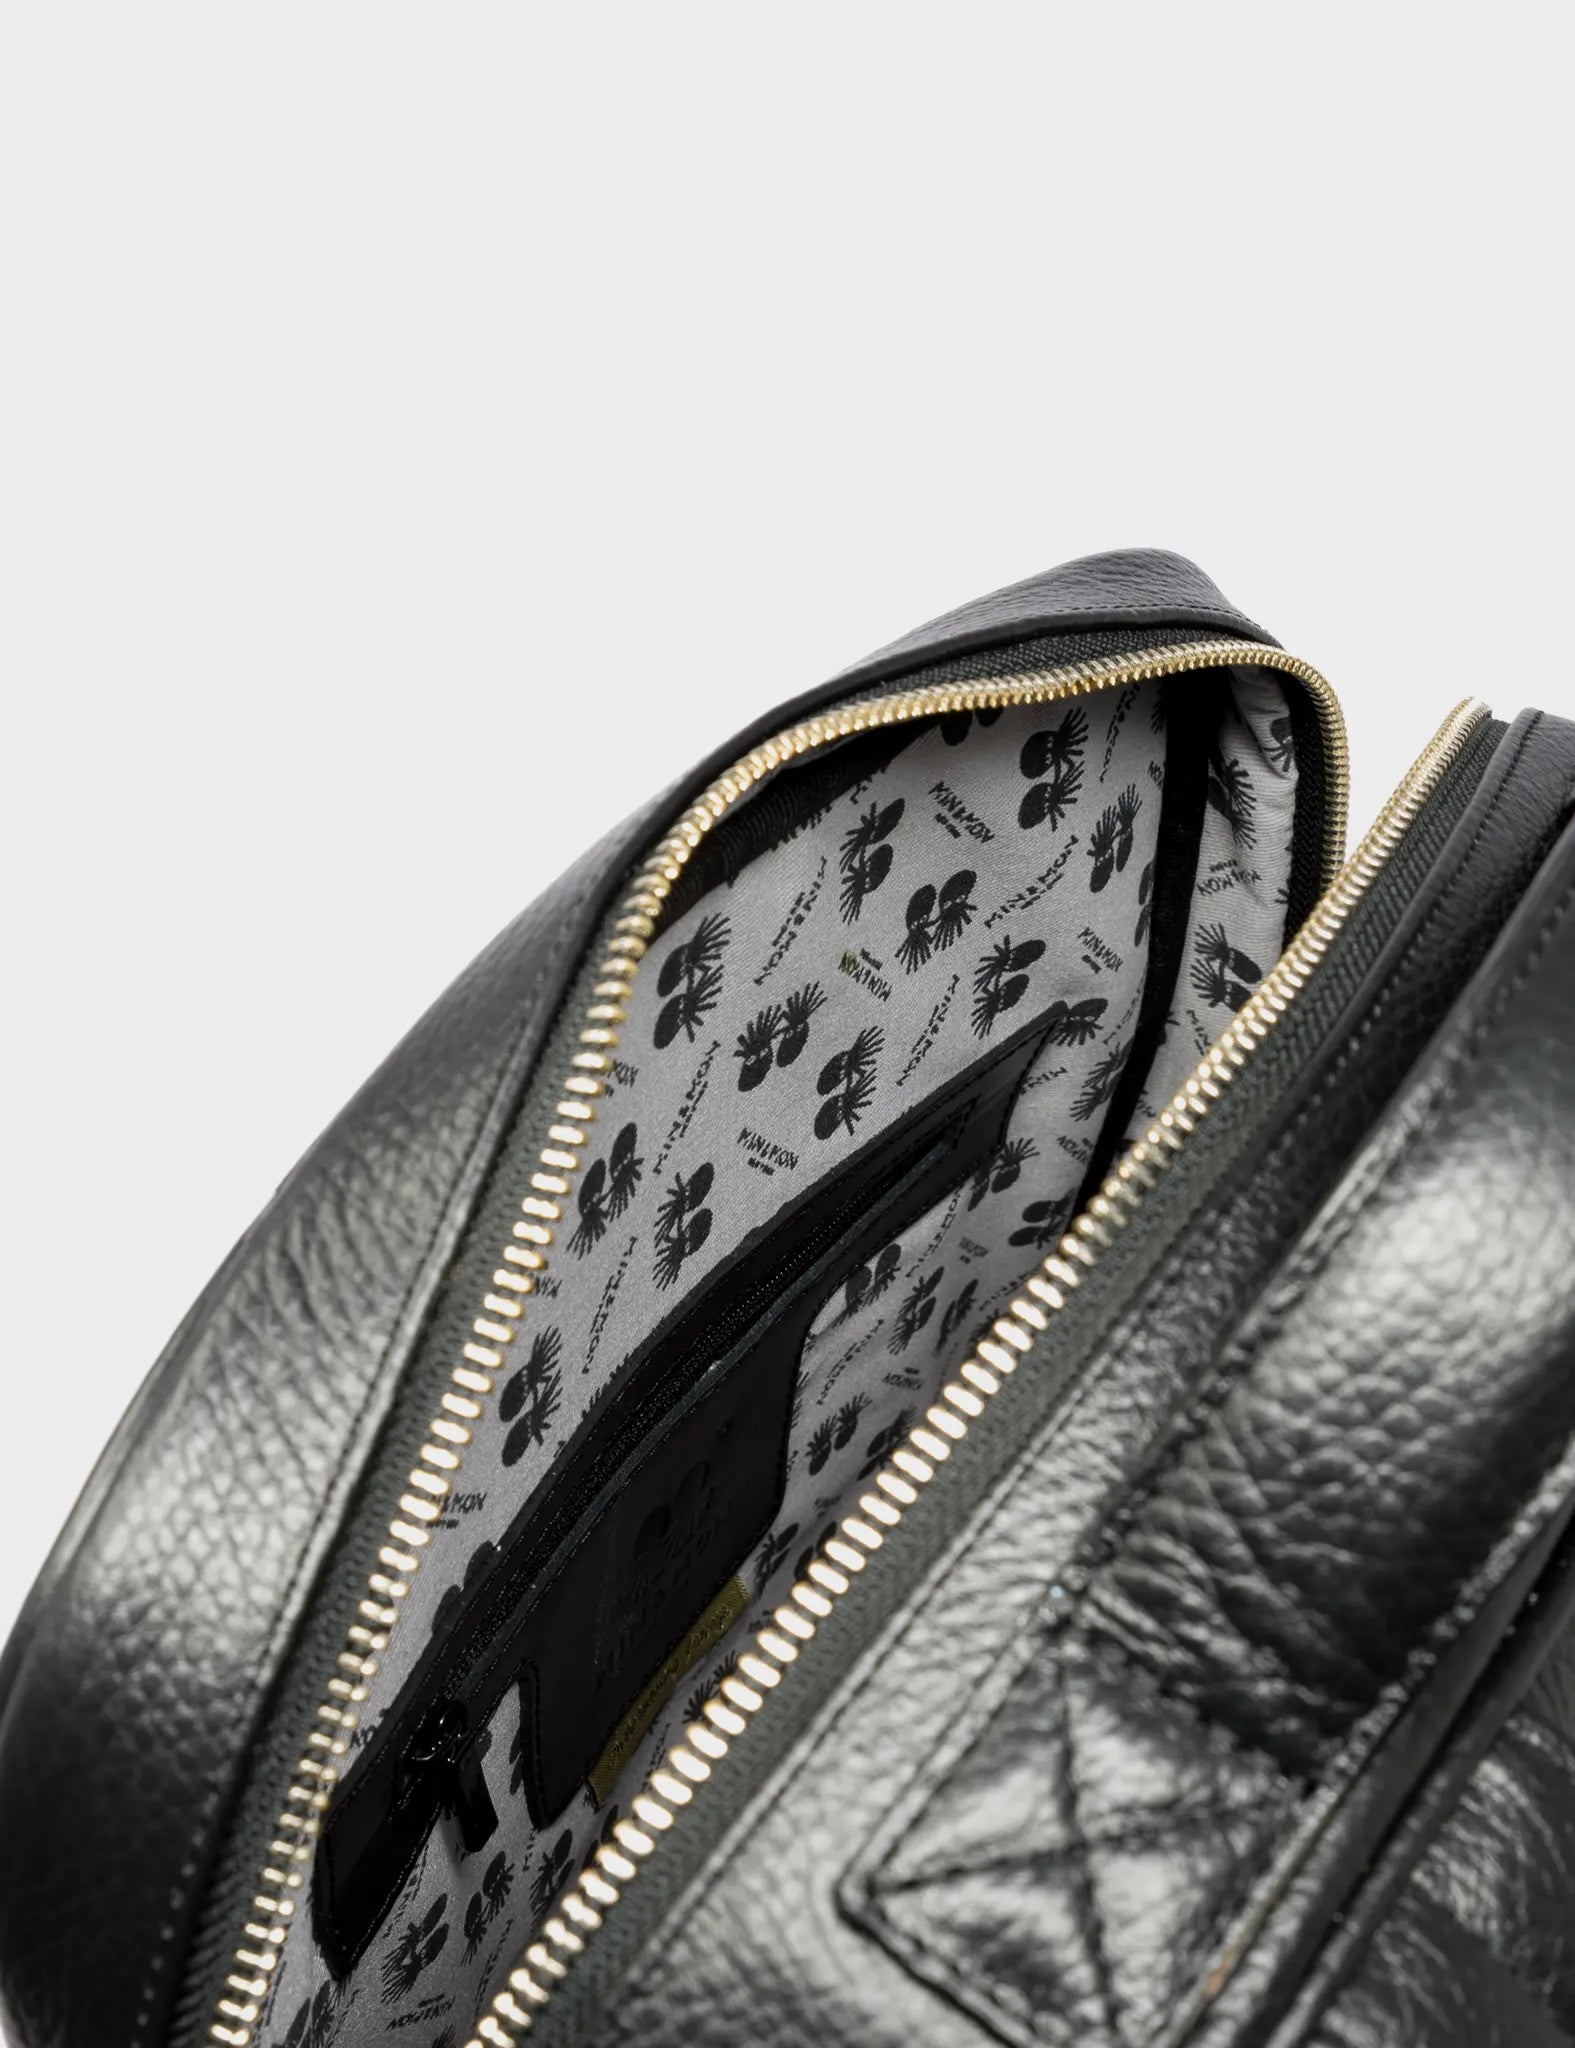 Black Leather Backpack Medium - Tiger and Snake Print - Inside 